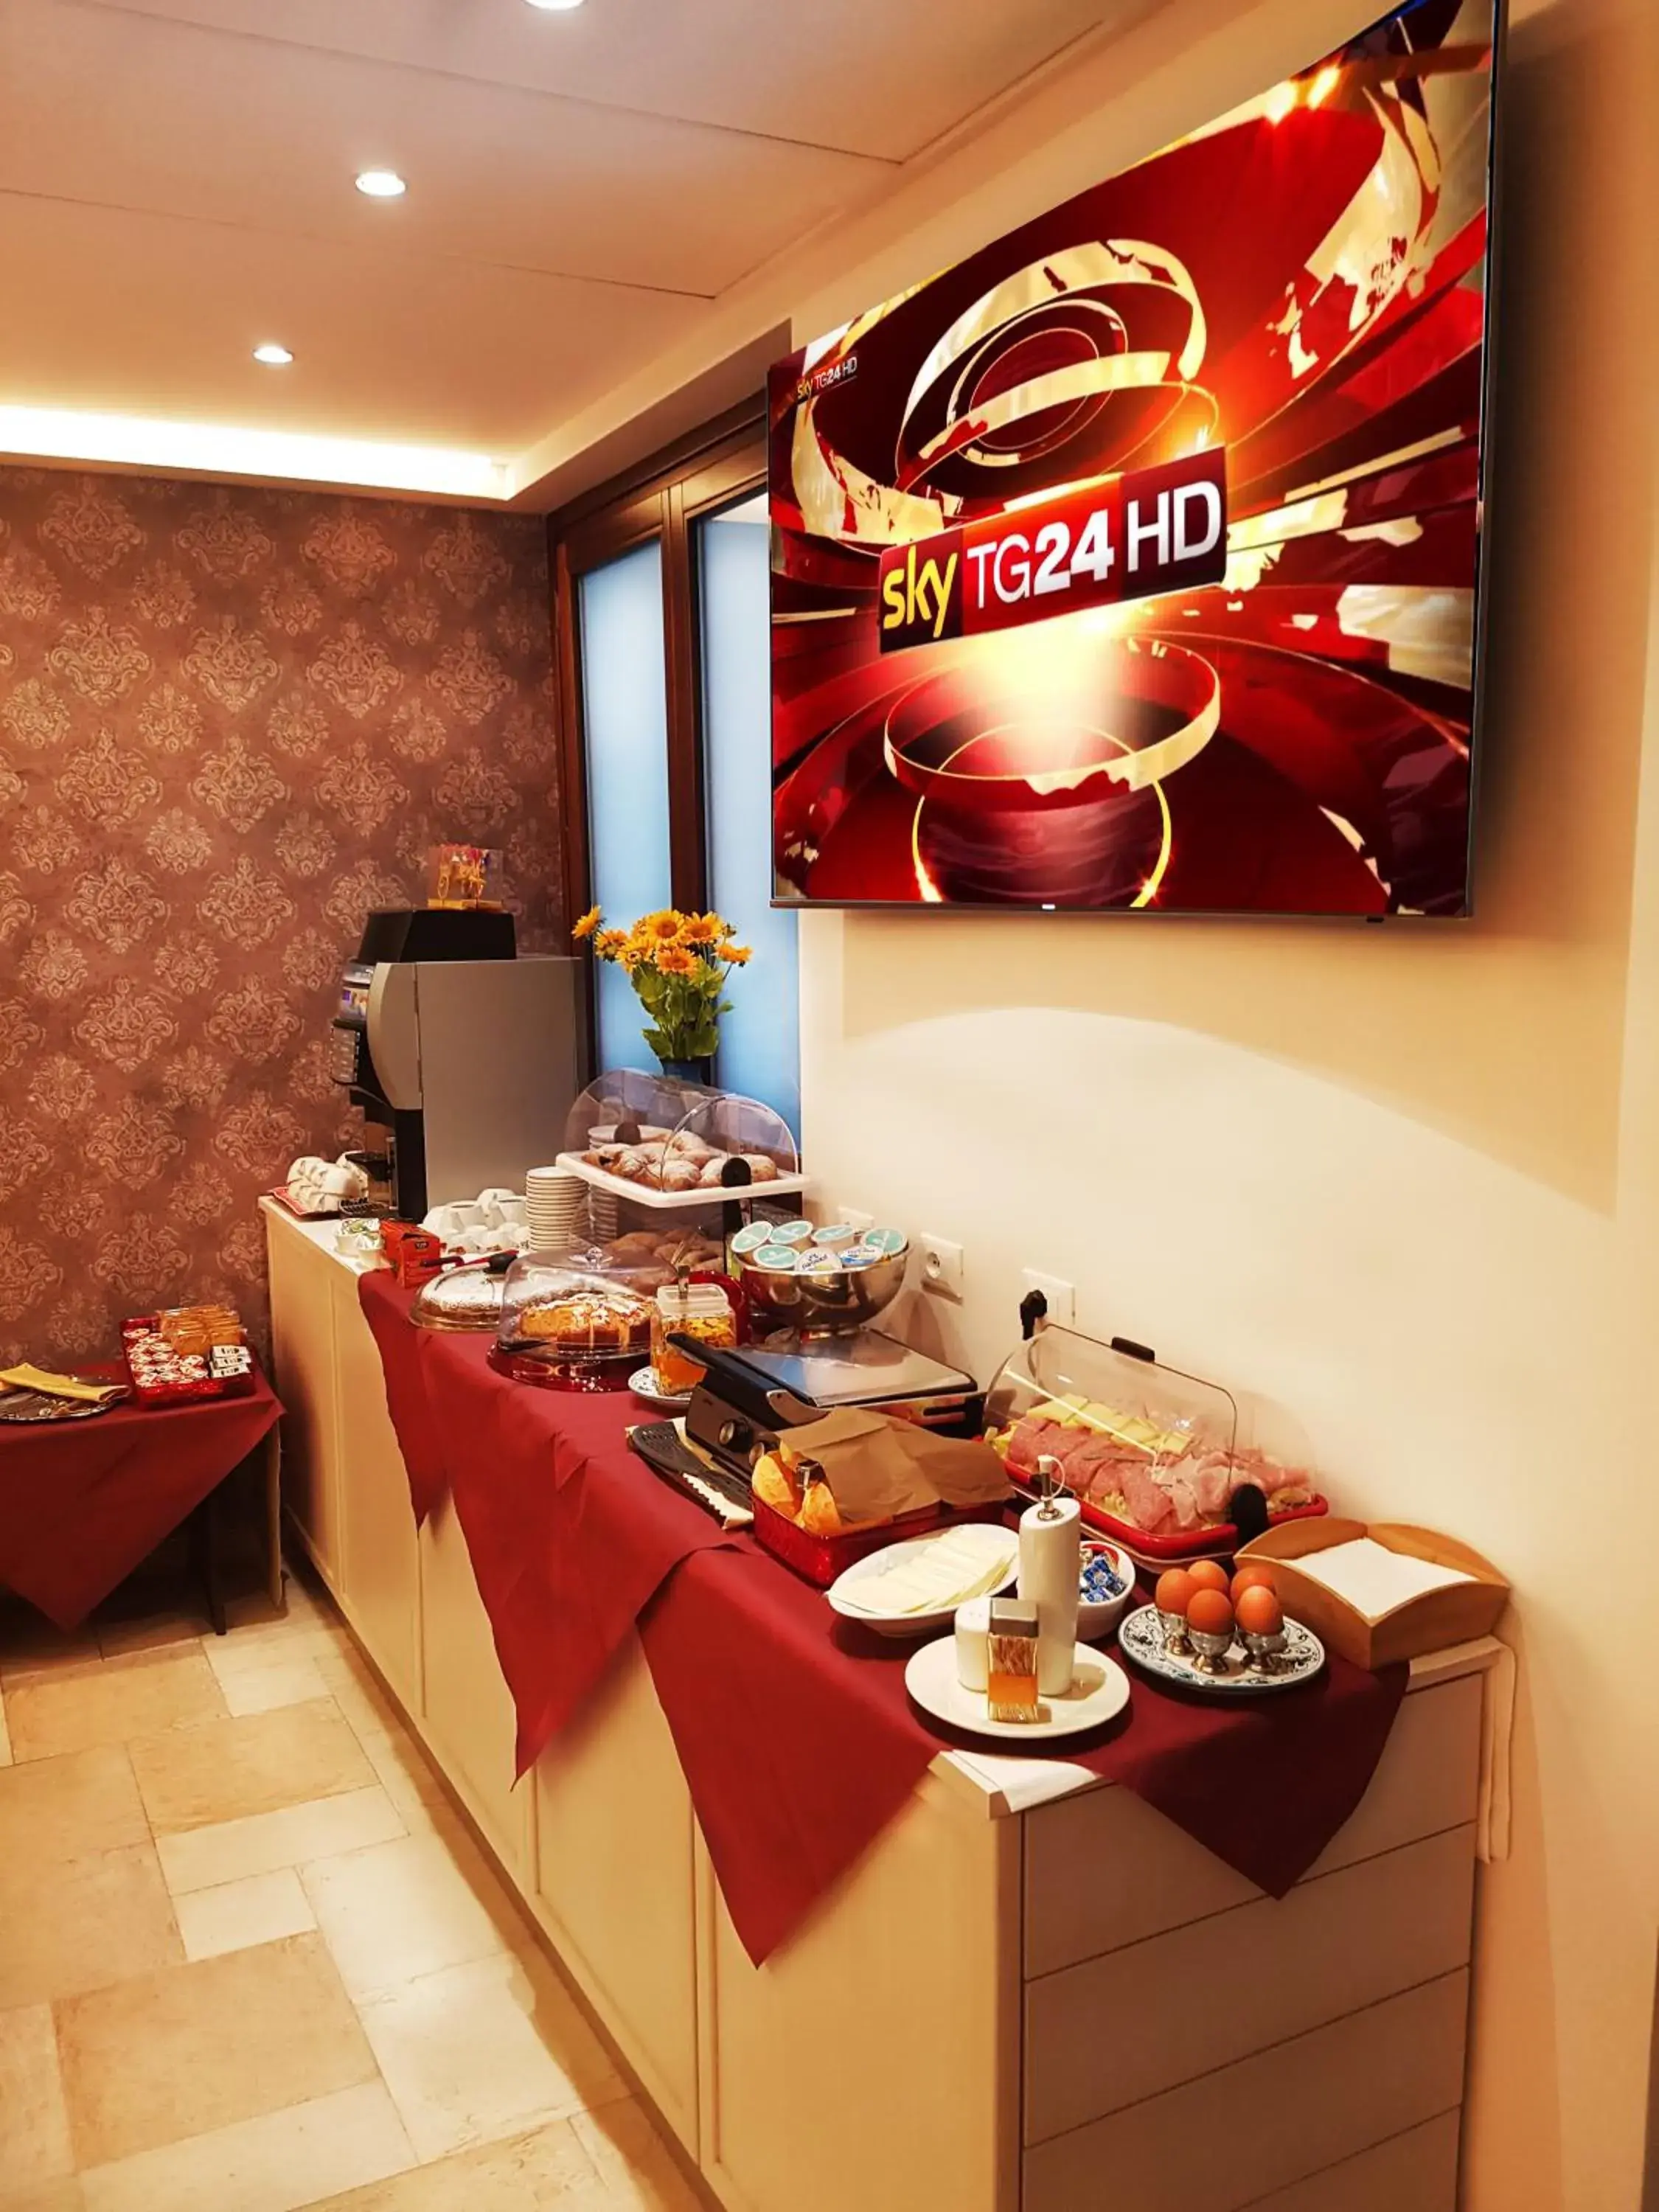 Buffet breakfast, Food in Hotel La Giara